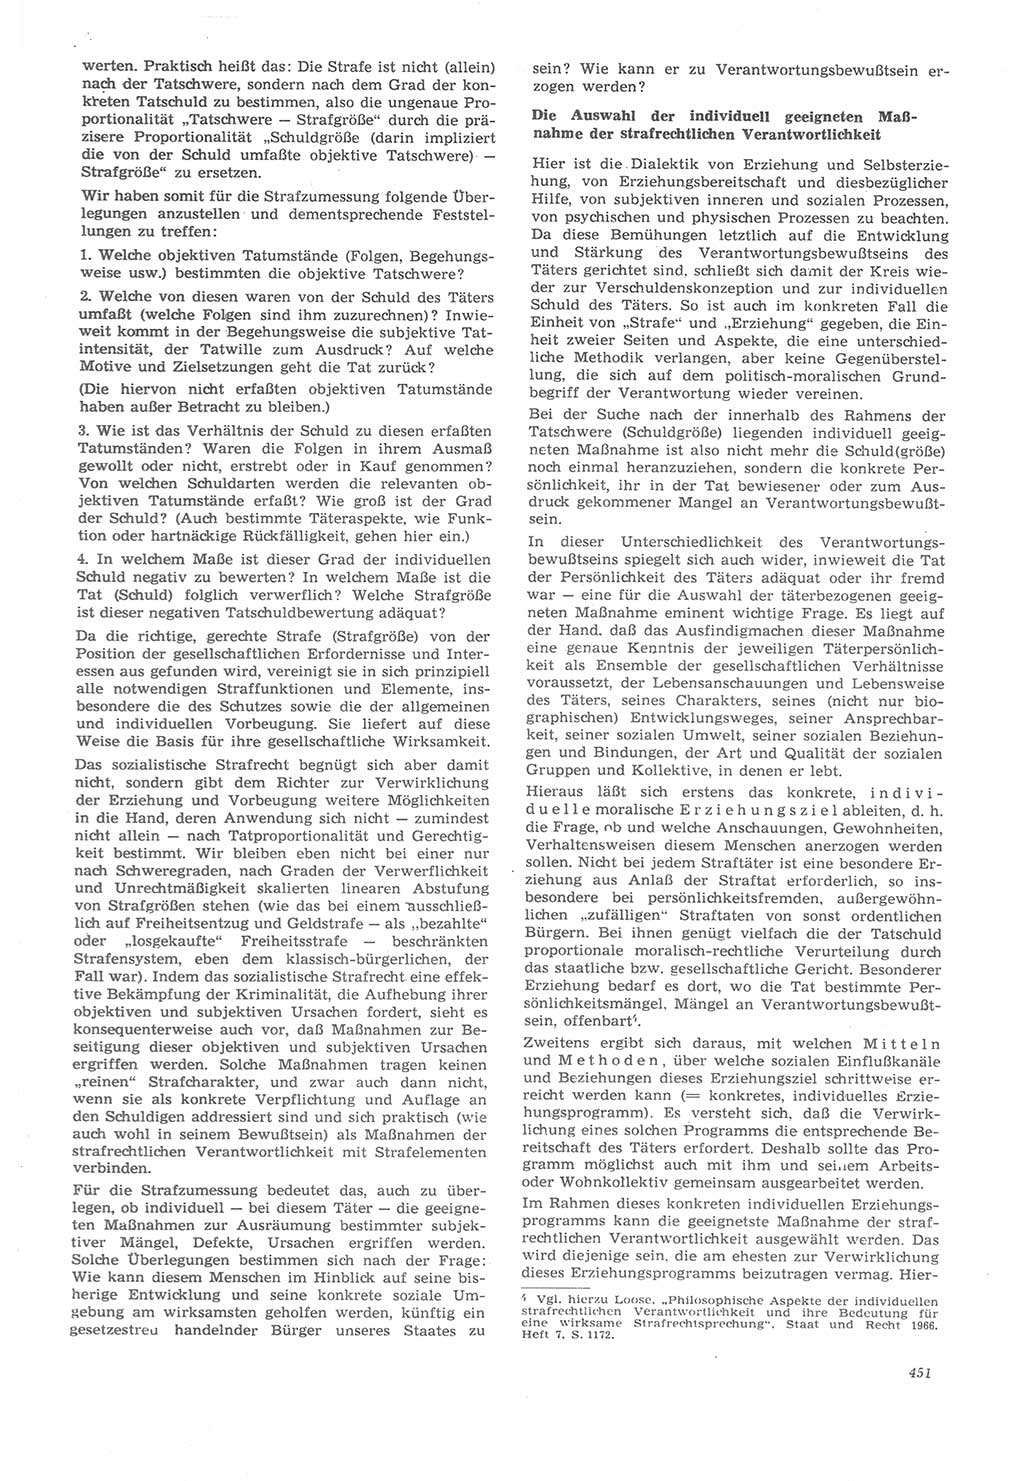 Neue Justiz (NJ), Zeitschrift für Recht und Rechtswissenschaft [Deutsche Demokratische Republik (DDR)], 22. Jahrgang 1968, Seite 451 (NJ DDR 1968, S. 451)